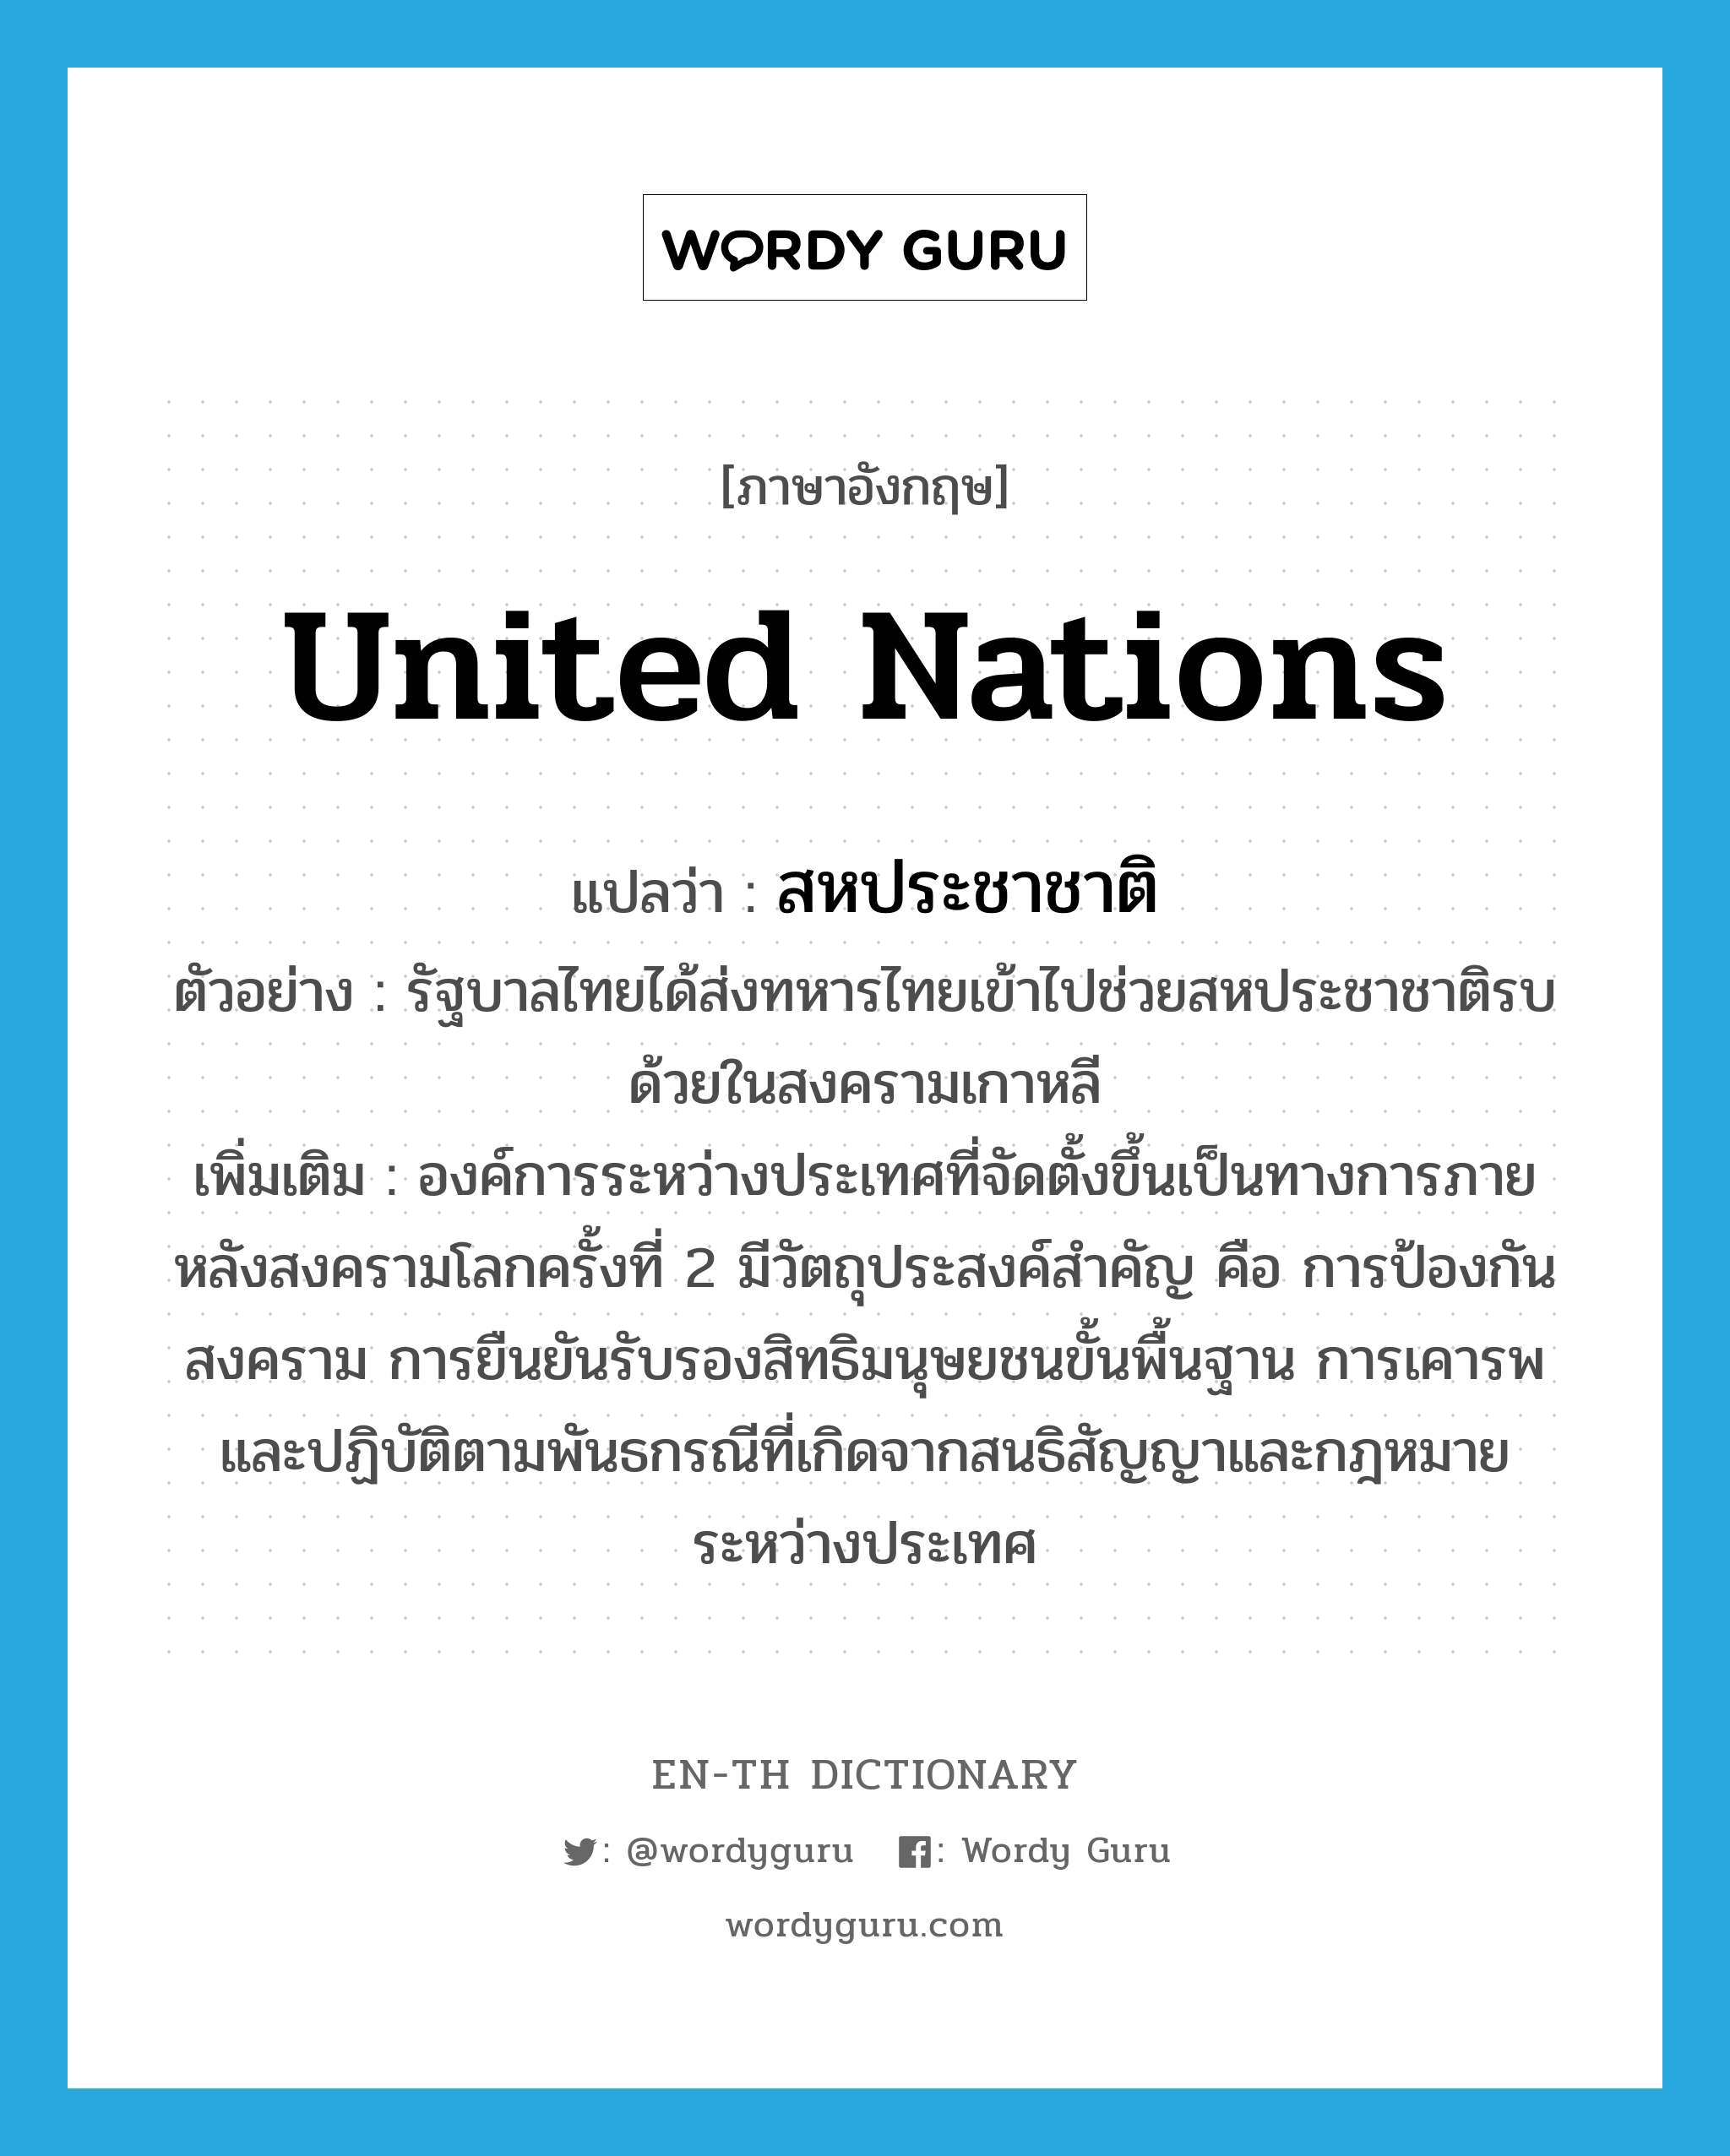 สหประชาชาติ ภาษาอังกฤษ?, คำศัพท์ภาษาอังกฤษ สหประชาชาติ แปลว่า United Nations ประเภท N ตัวอย่าง รัฐบาลไทยได้ส่งทหารไทยเข้าไปช่วยสหประชาชาติรบด้วยในสงครามเกาหลี เพิ่มเติม องค์การระหว่างประเทศที่จัดตั้งขึ้นเป็นทางการภายหลังสงครามโลกครั้งที่ 2 มีวัตถุประสงค์สำคัญ คือ การป้องกันสงคราม การยืนยันรับรองสิทธิมนุษยชนขั้นพื้นฐาน การเคารพและปฏิบัติตามพันธกรณีที่เกิดจากสนธิสัญญาและกฎหมายระหว่างประเทศ หมวด N